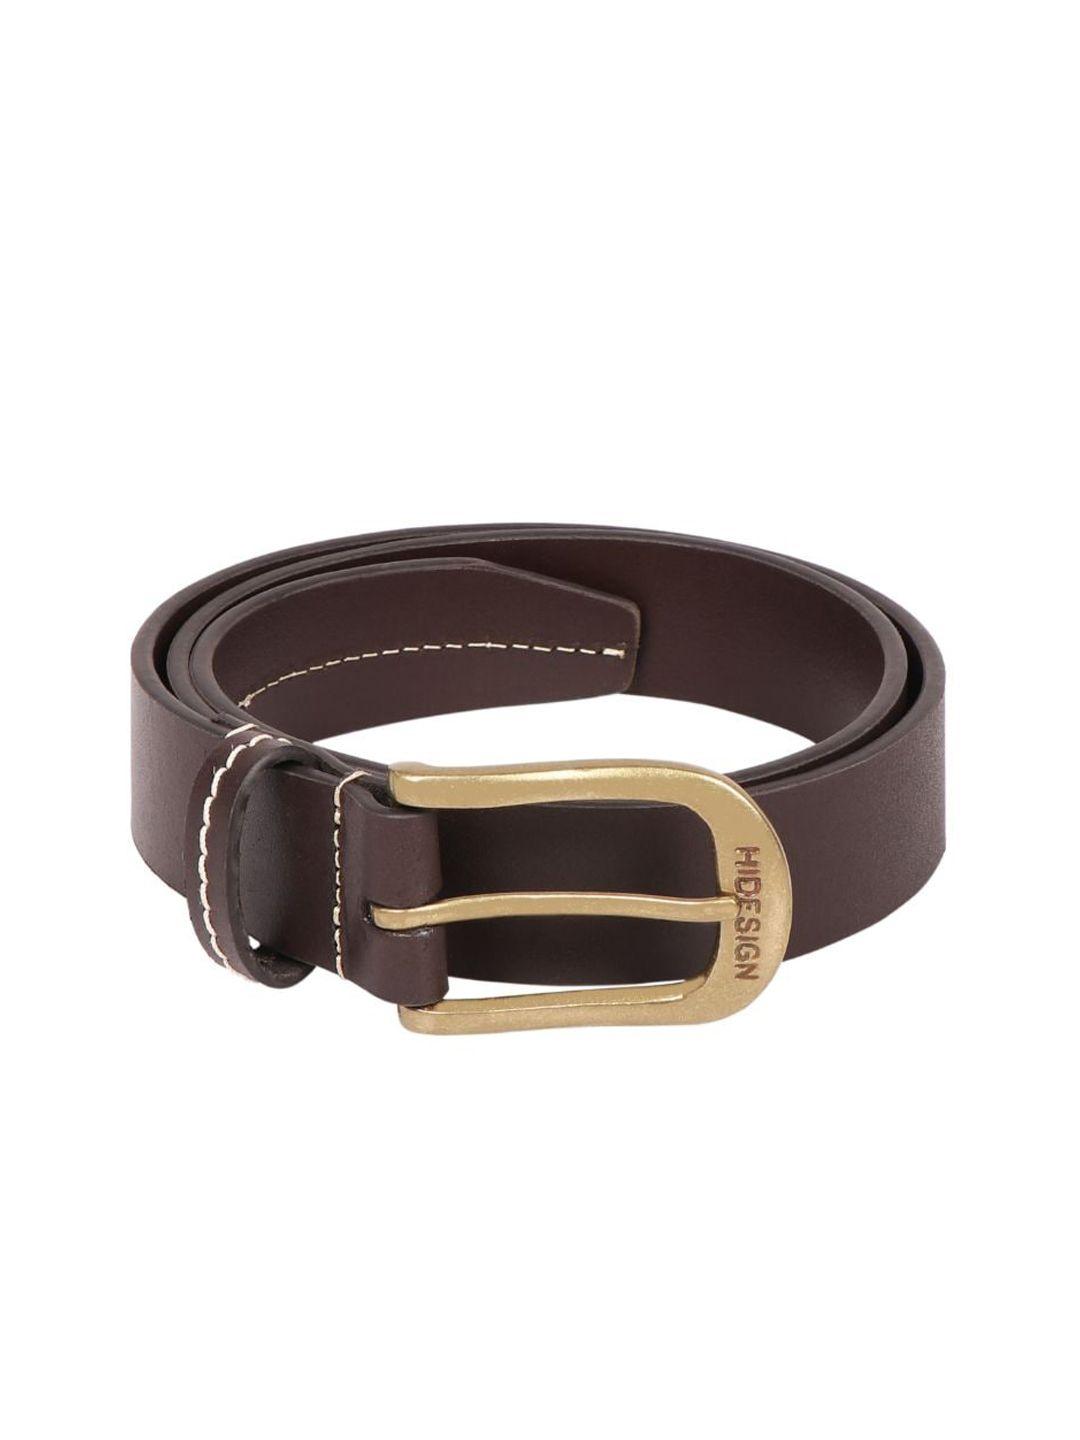 hidesign men brown leather belt